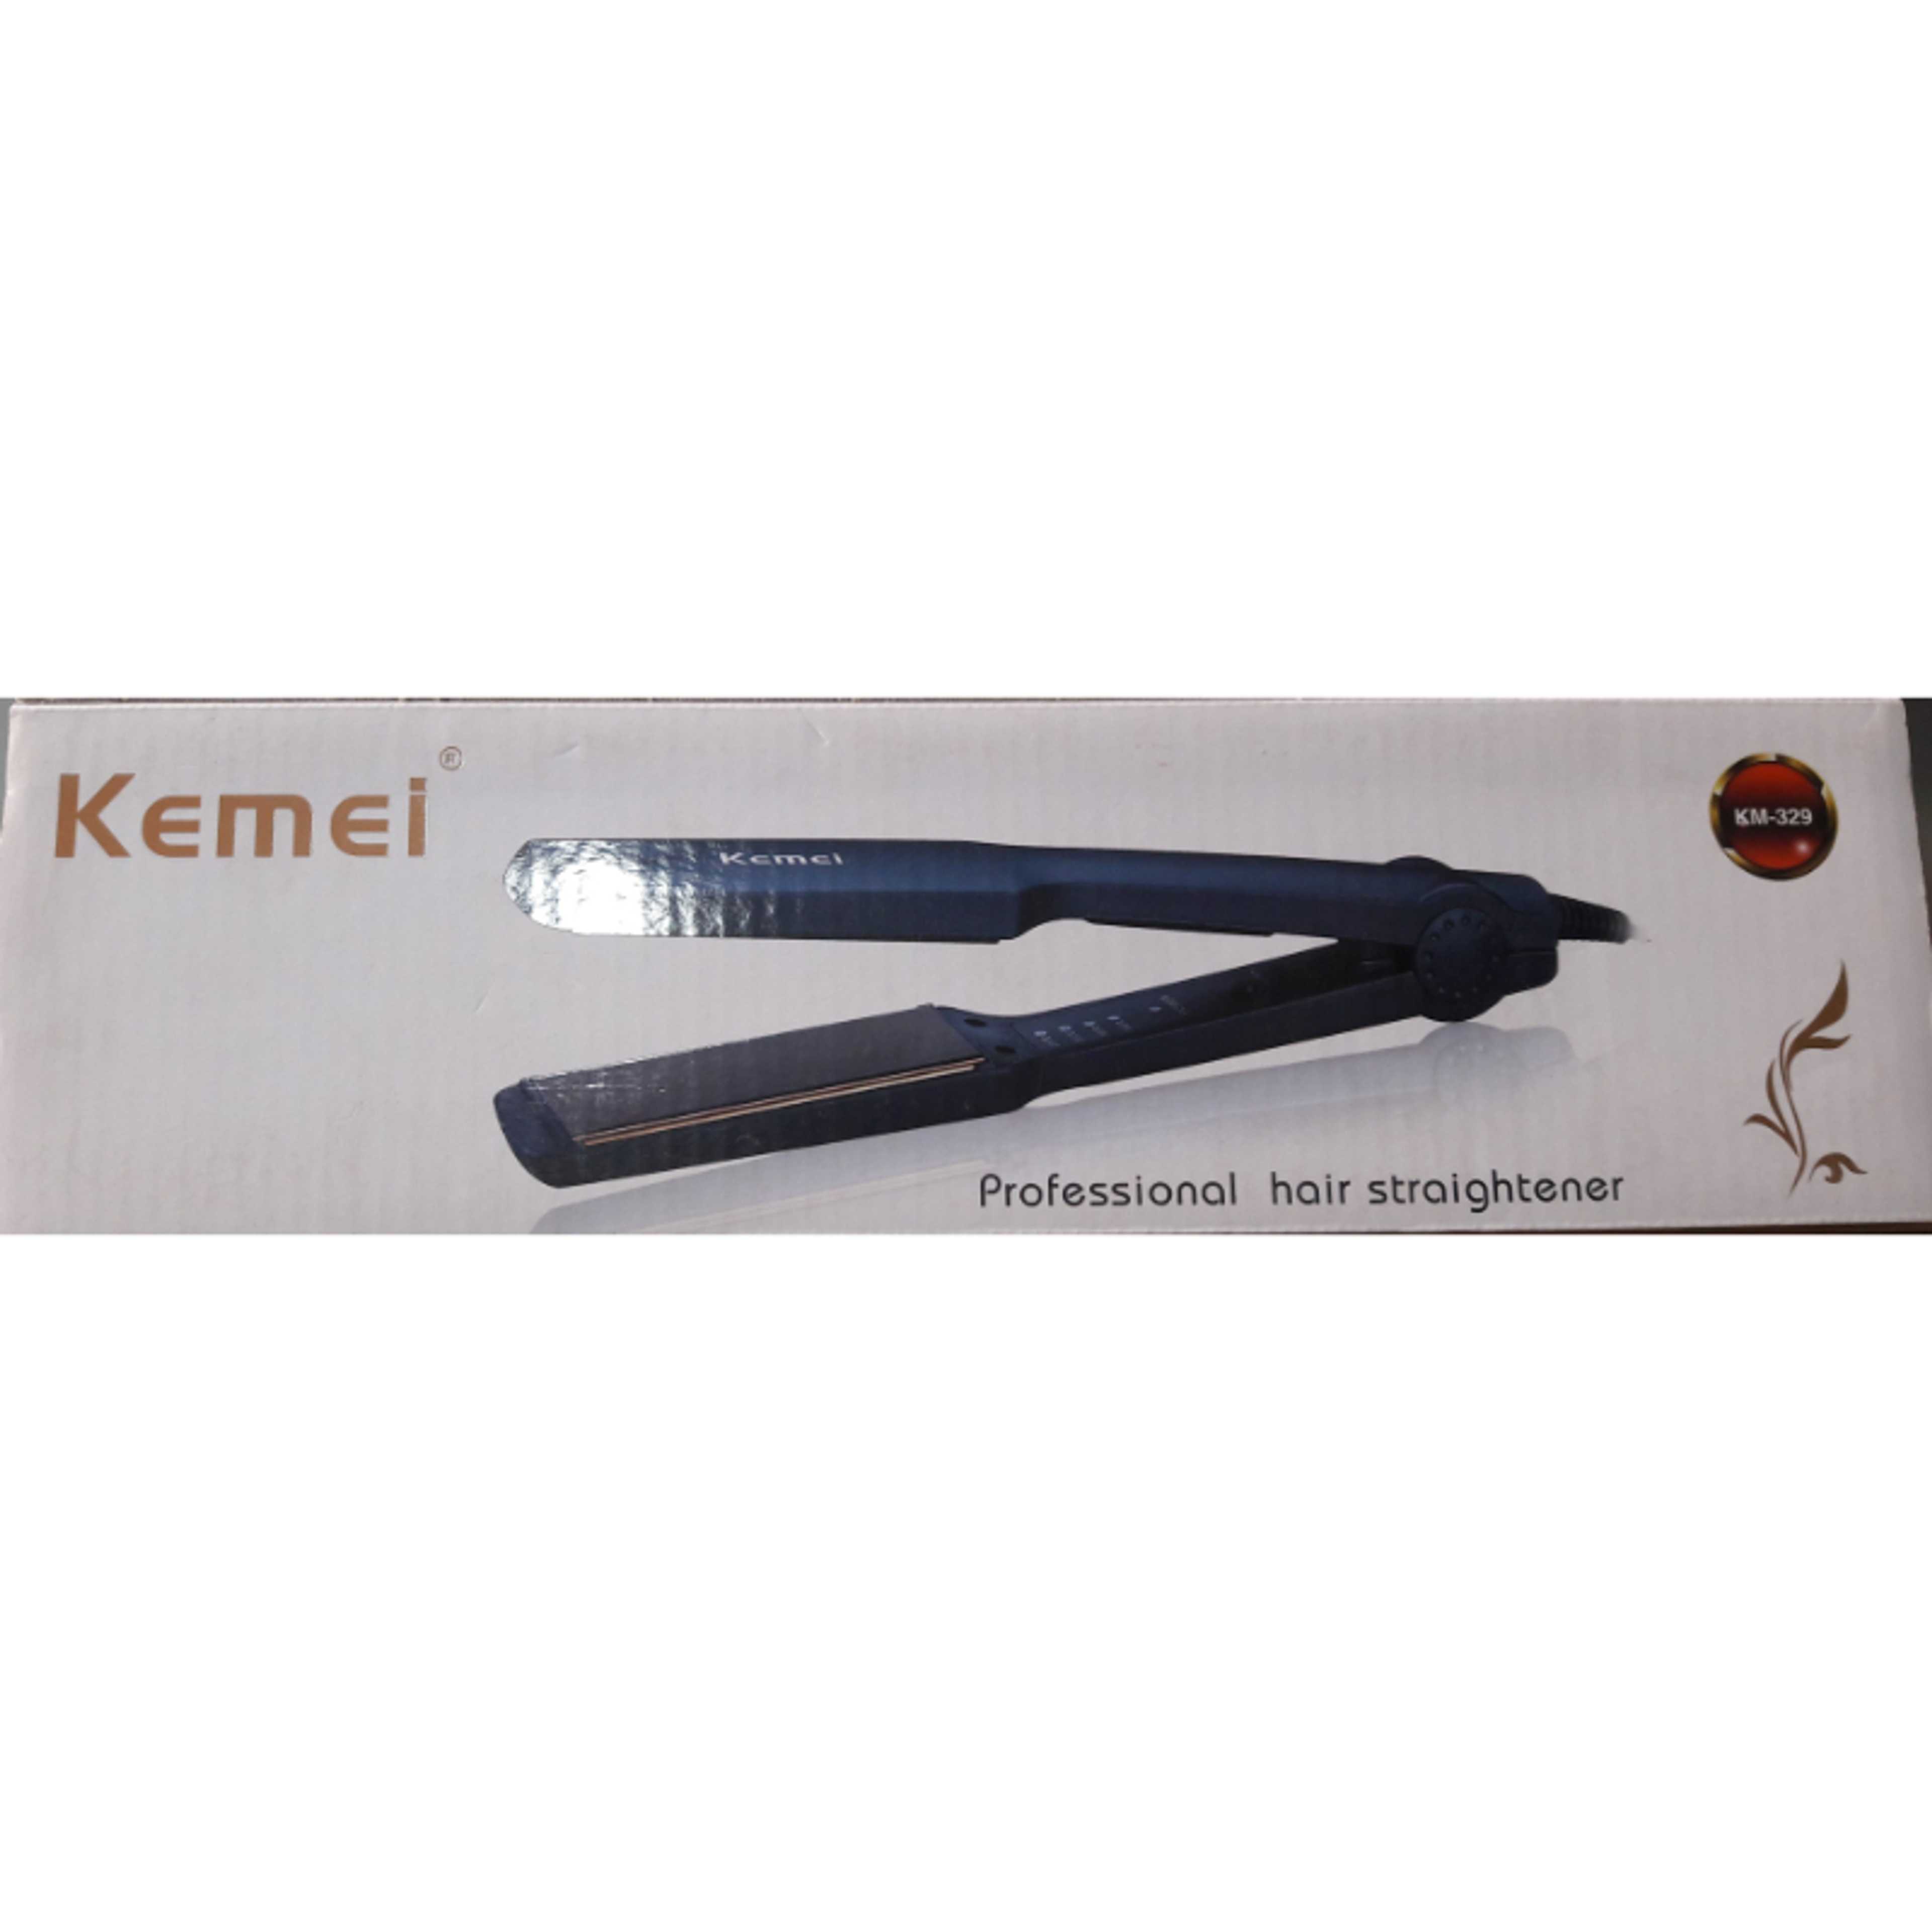 Kemei Hair Straightener/ Professional Hair Straightner Specially for women